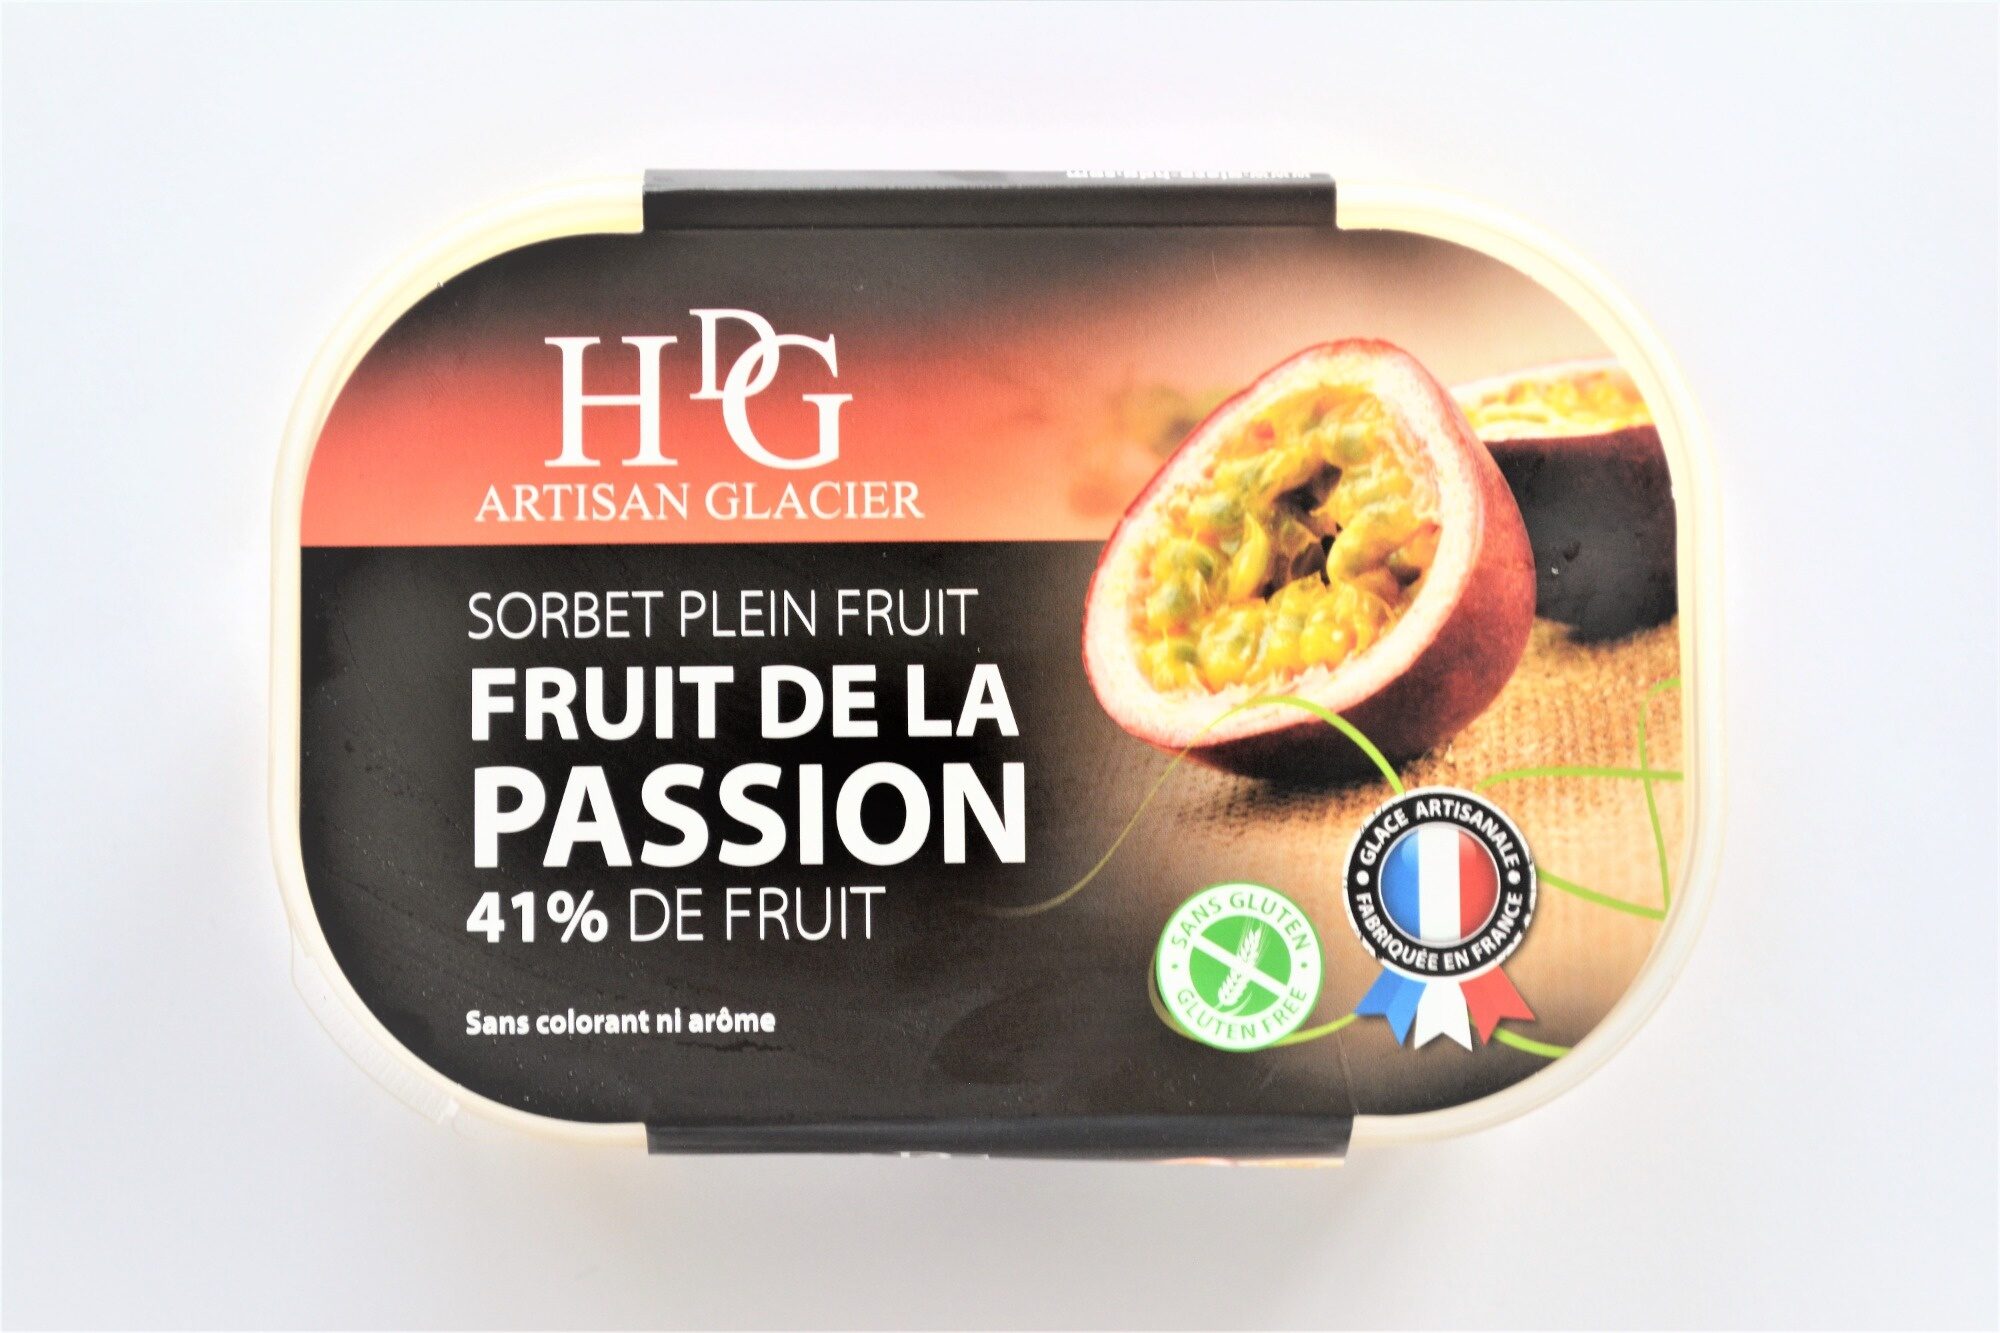 Sorbet plein fruit FRUIT DE LA PASSION, 41% de fruit - Product - fr